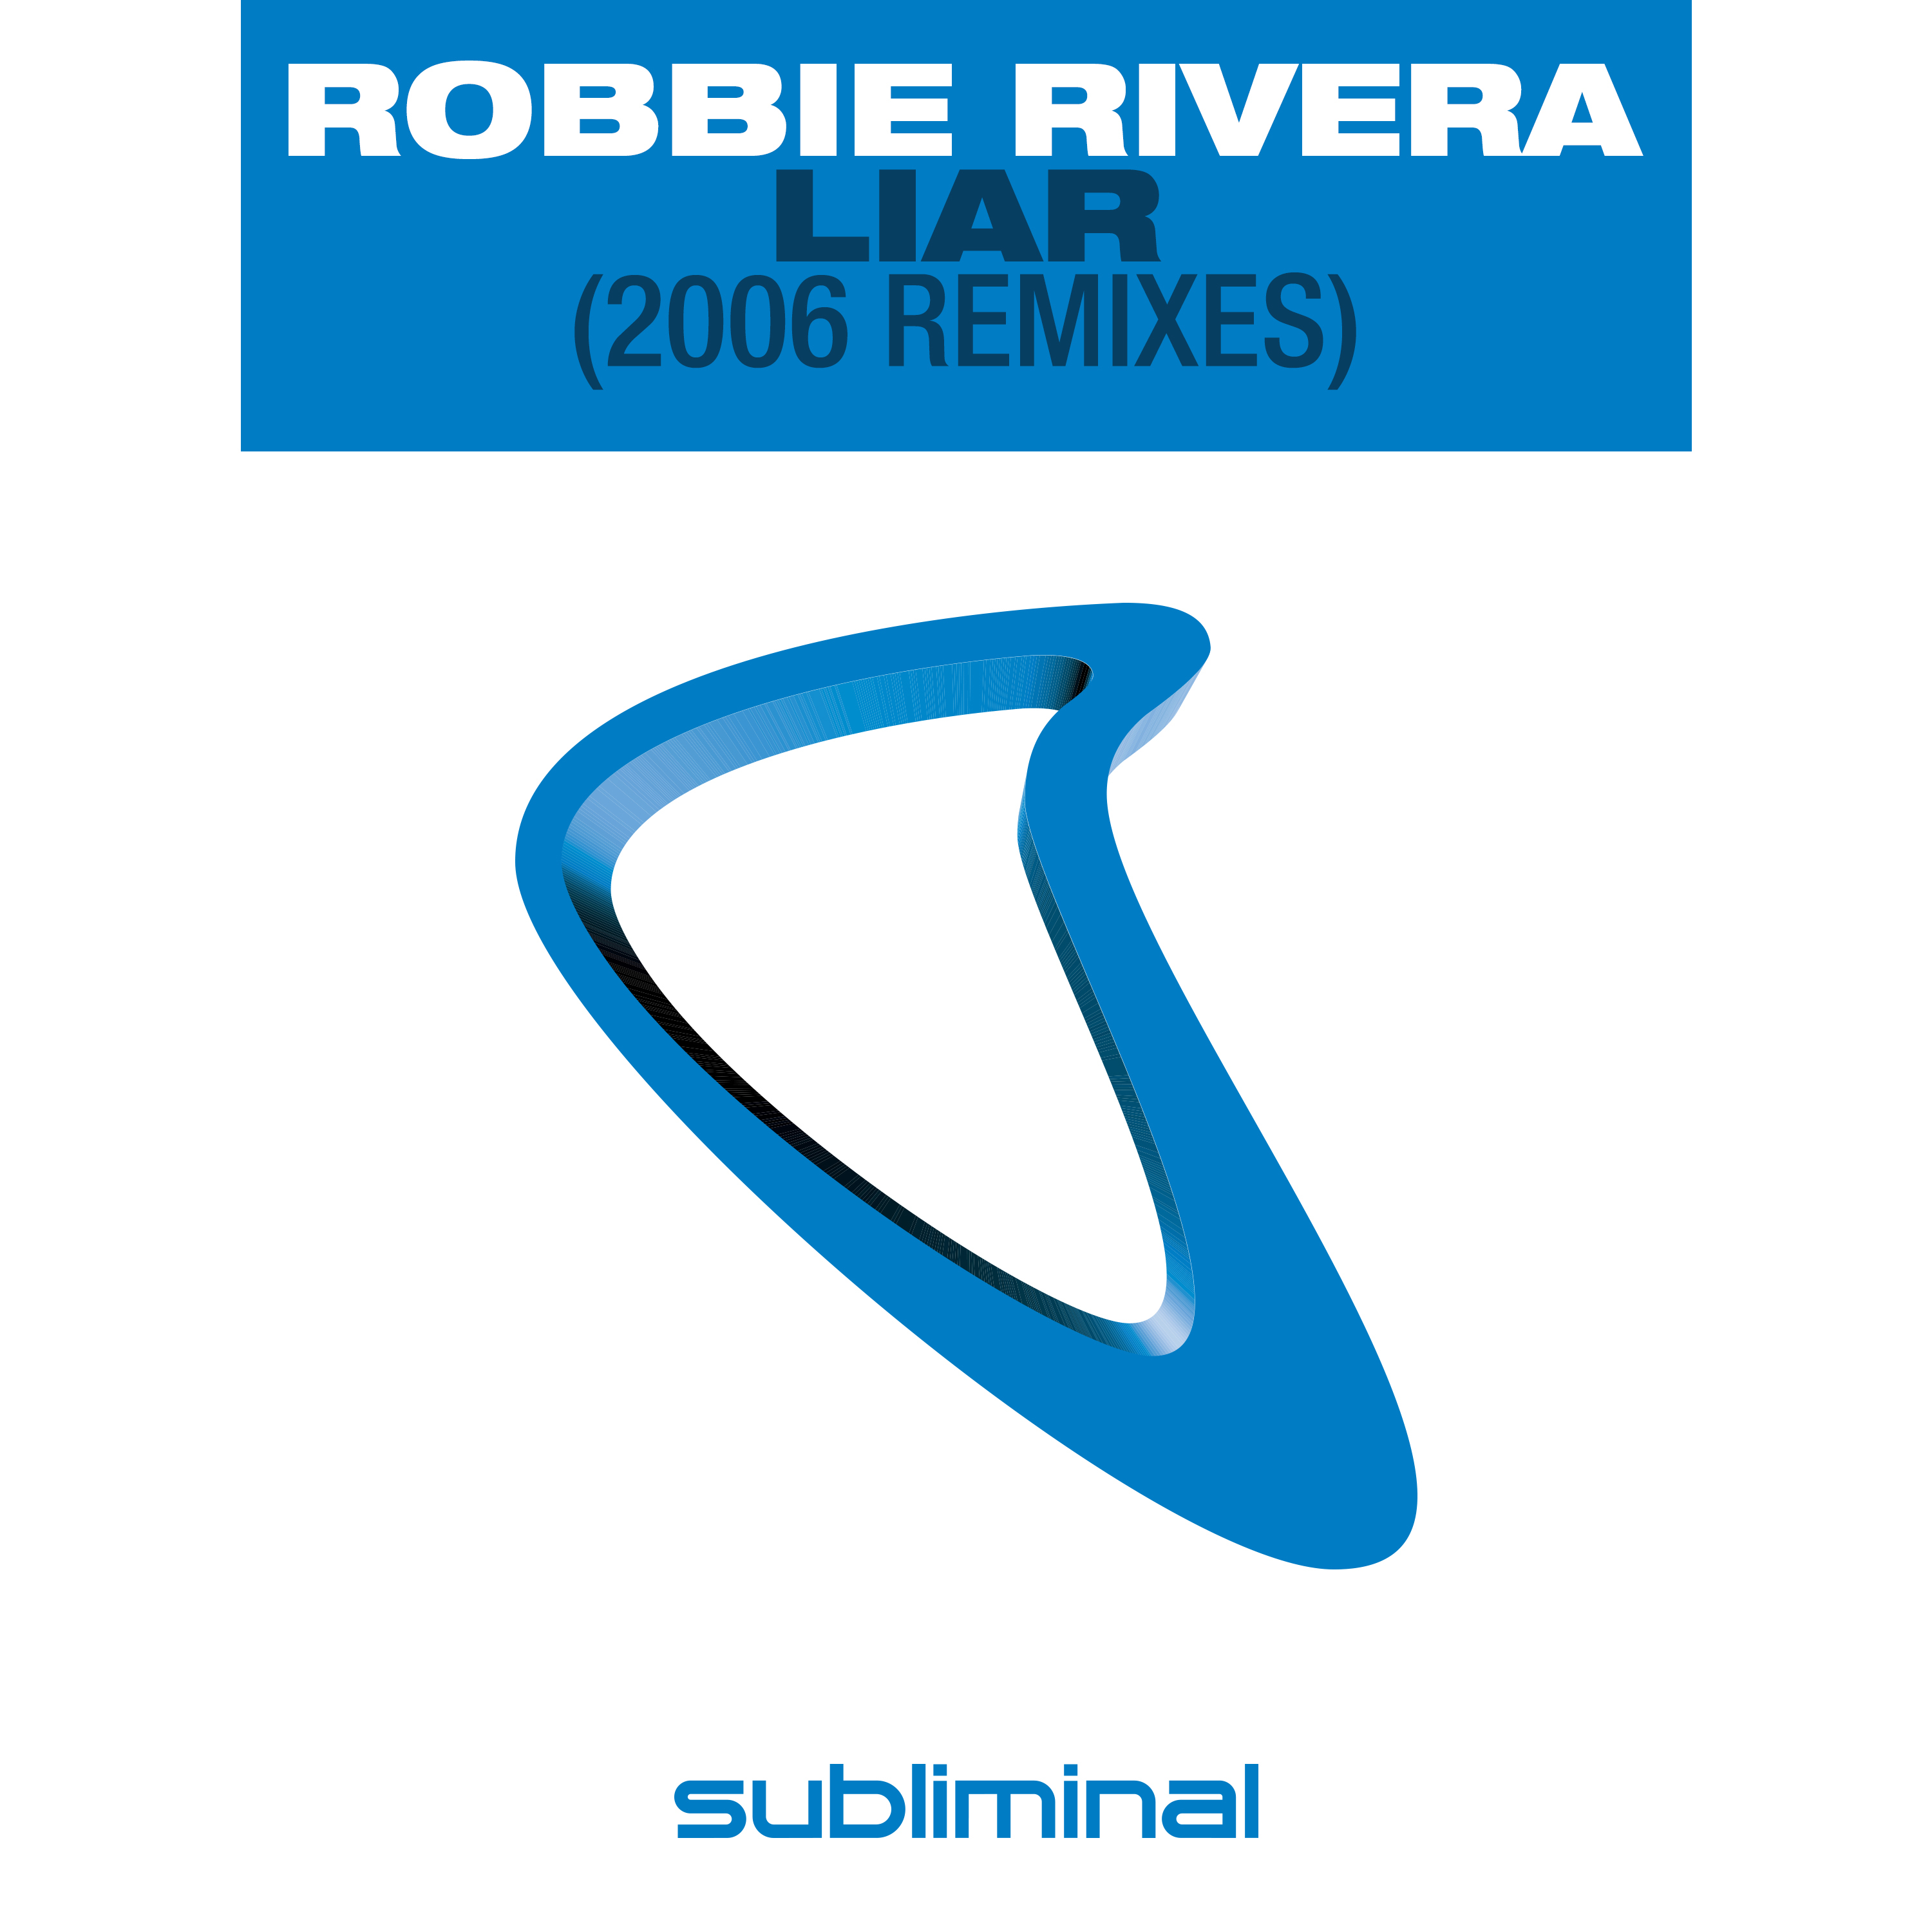 Liar (Rivera's 2006 Mix)